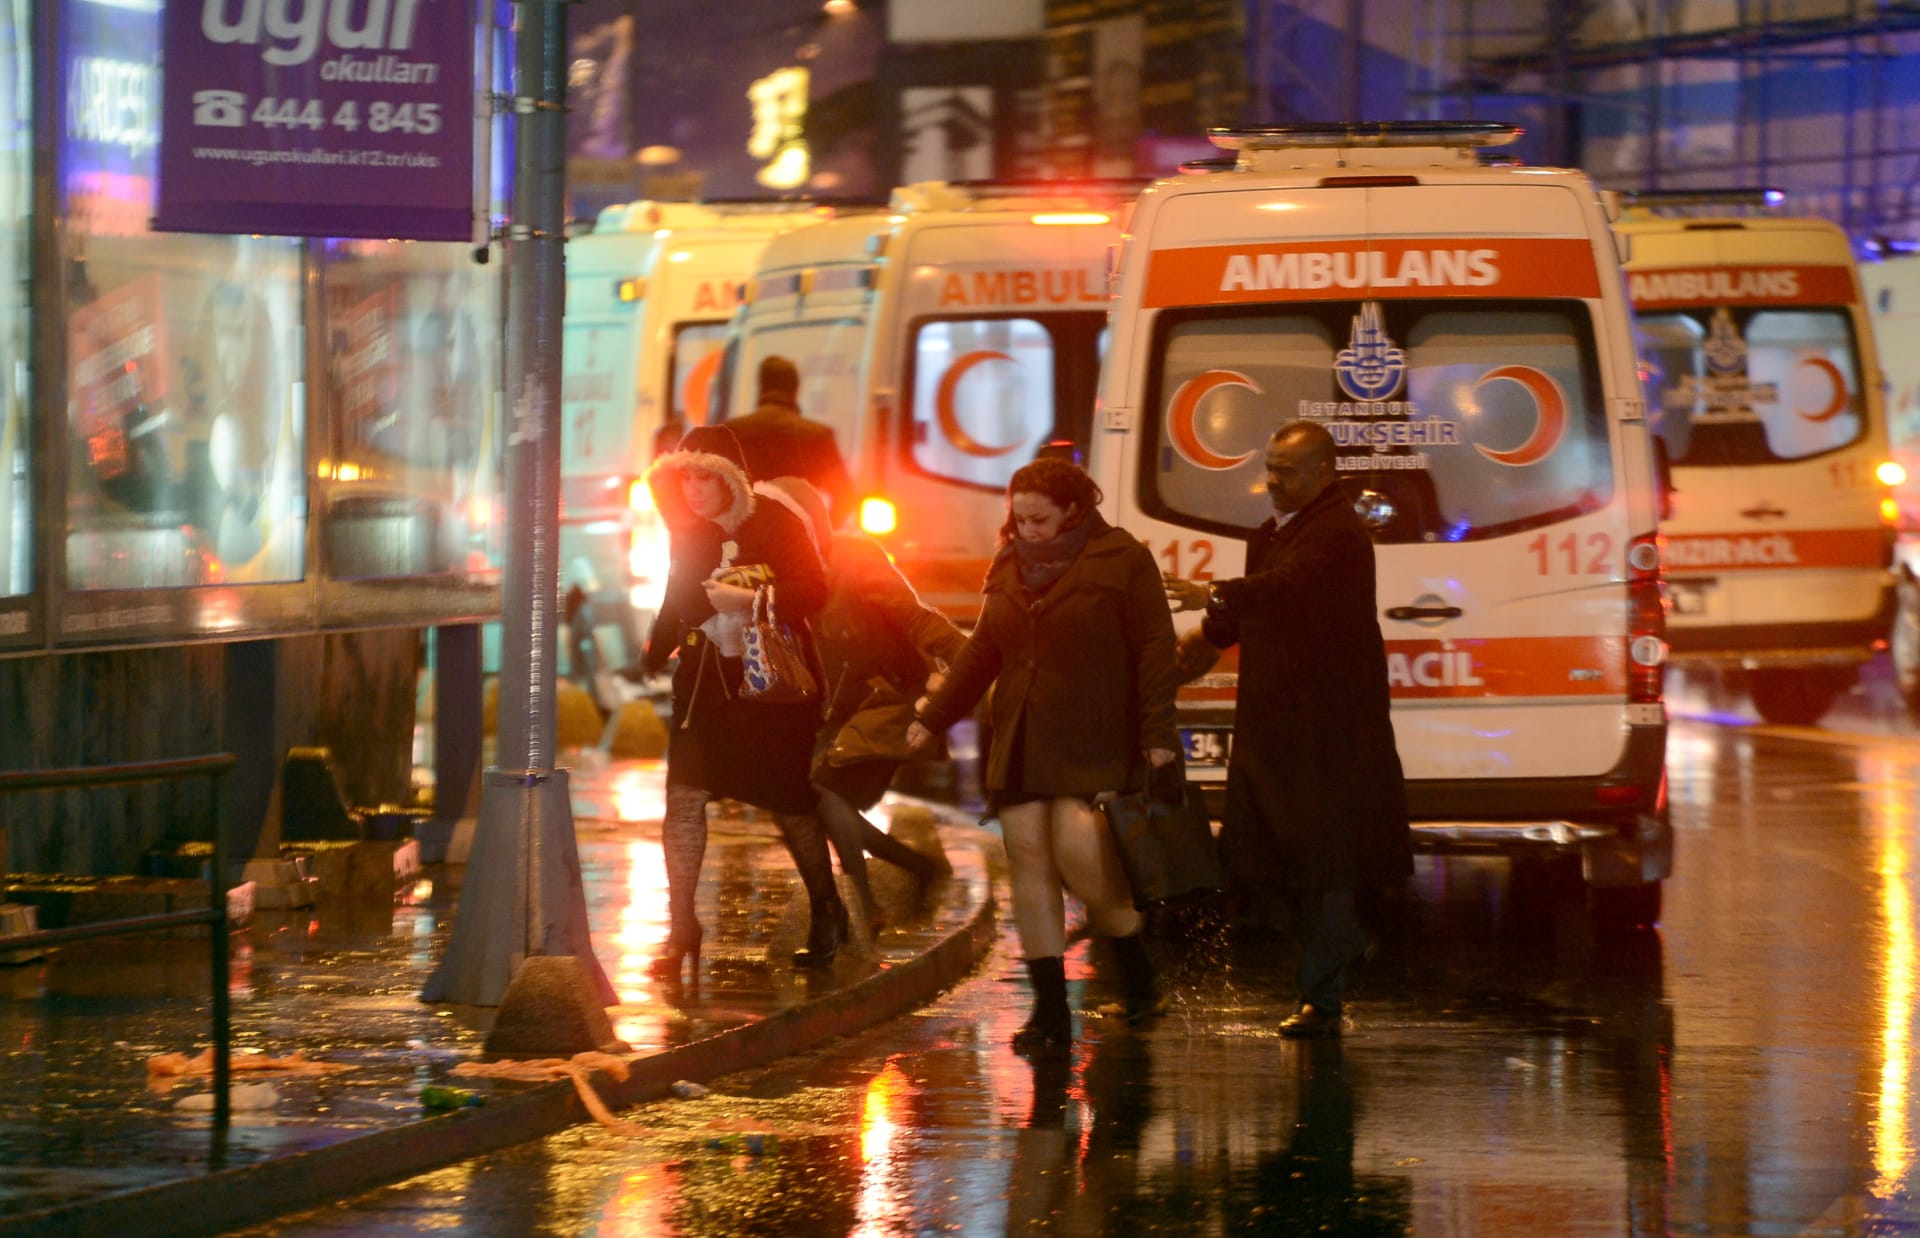 أغلب ضحايا هجوم النادي الليلي بإسطنبول من العرب.. وهذه هي الجنسيات